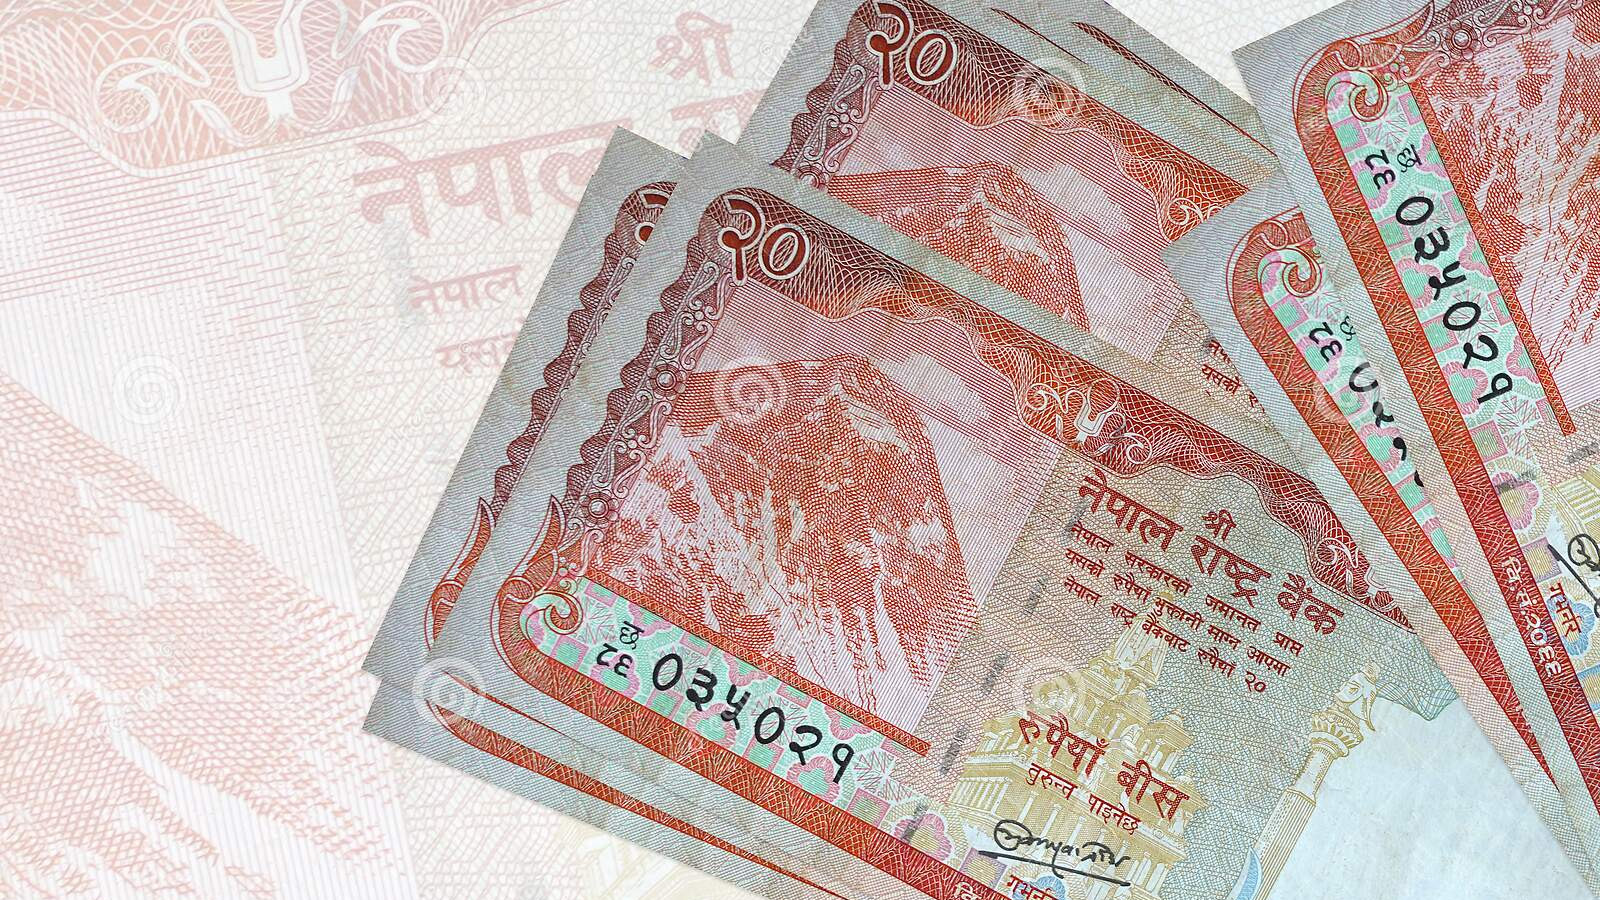 २० रुपैयाँ दरका ३१ करोड थान नेपाली नोट छाप्न ६२ करोड खर्च